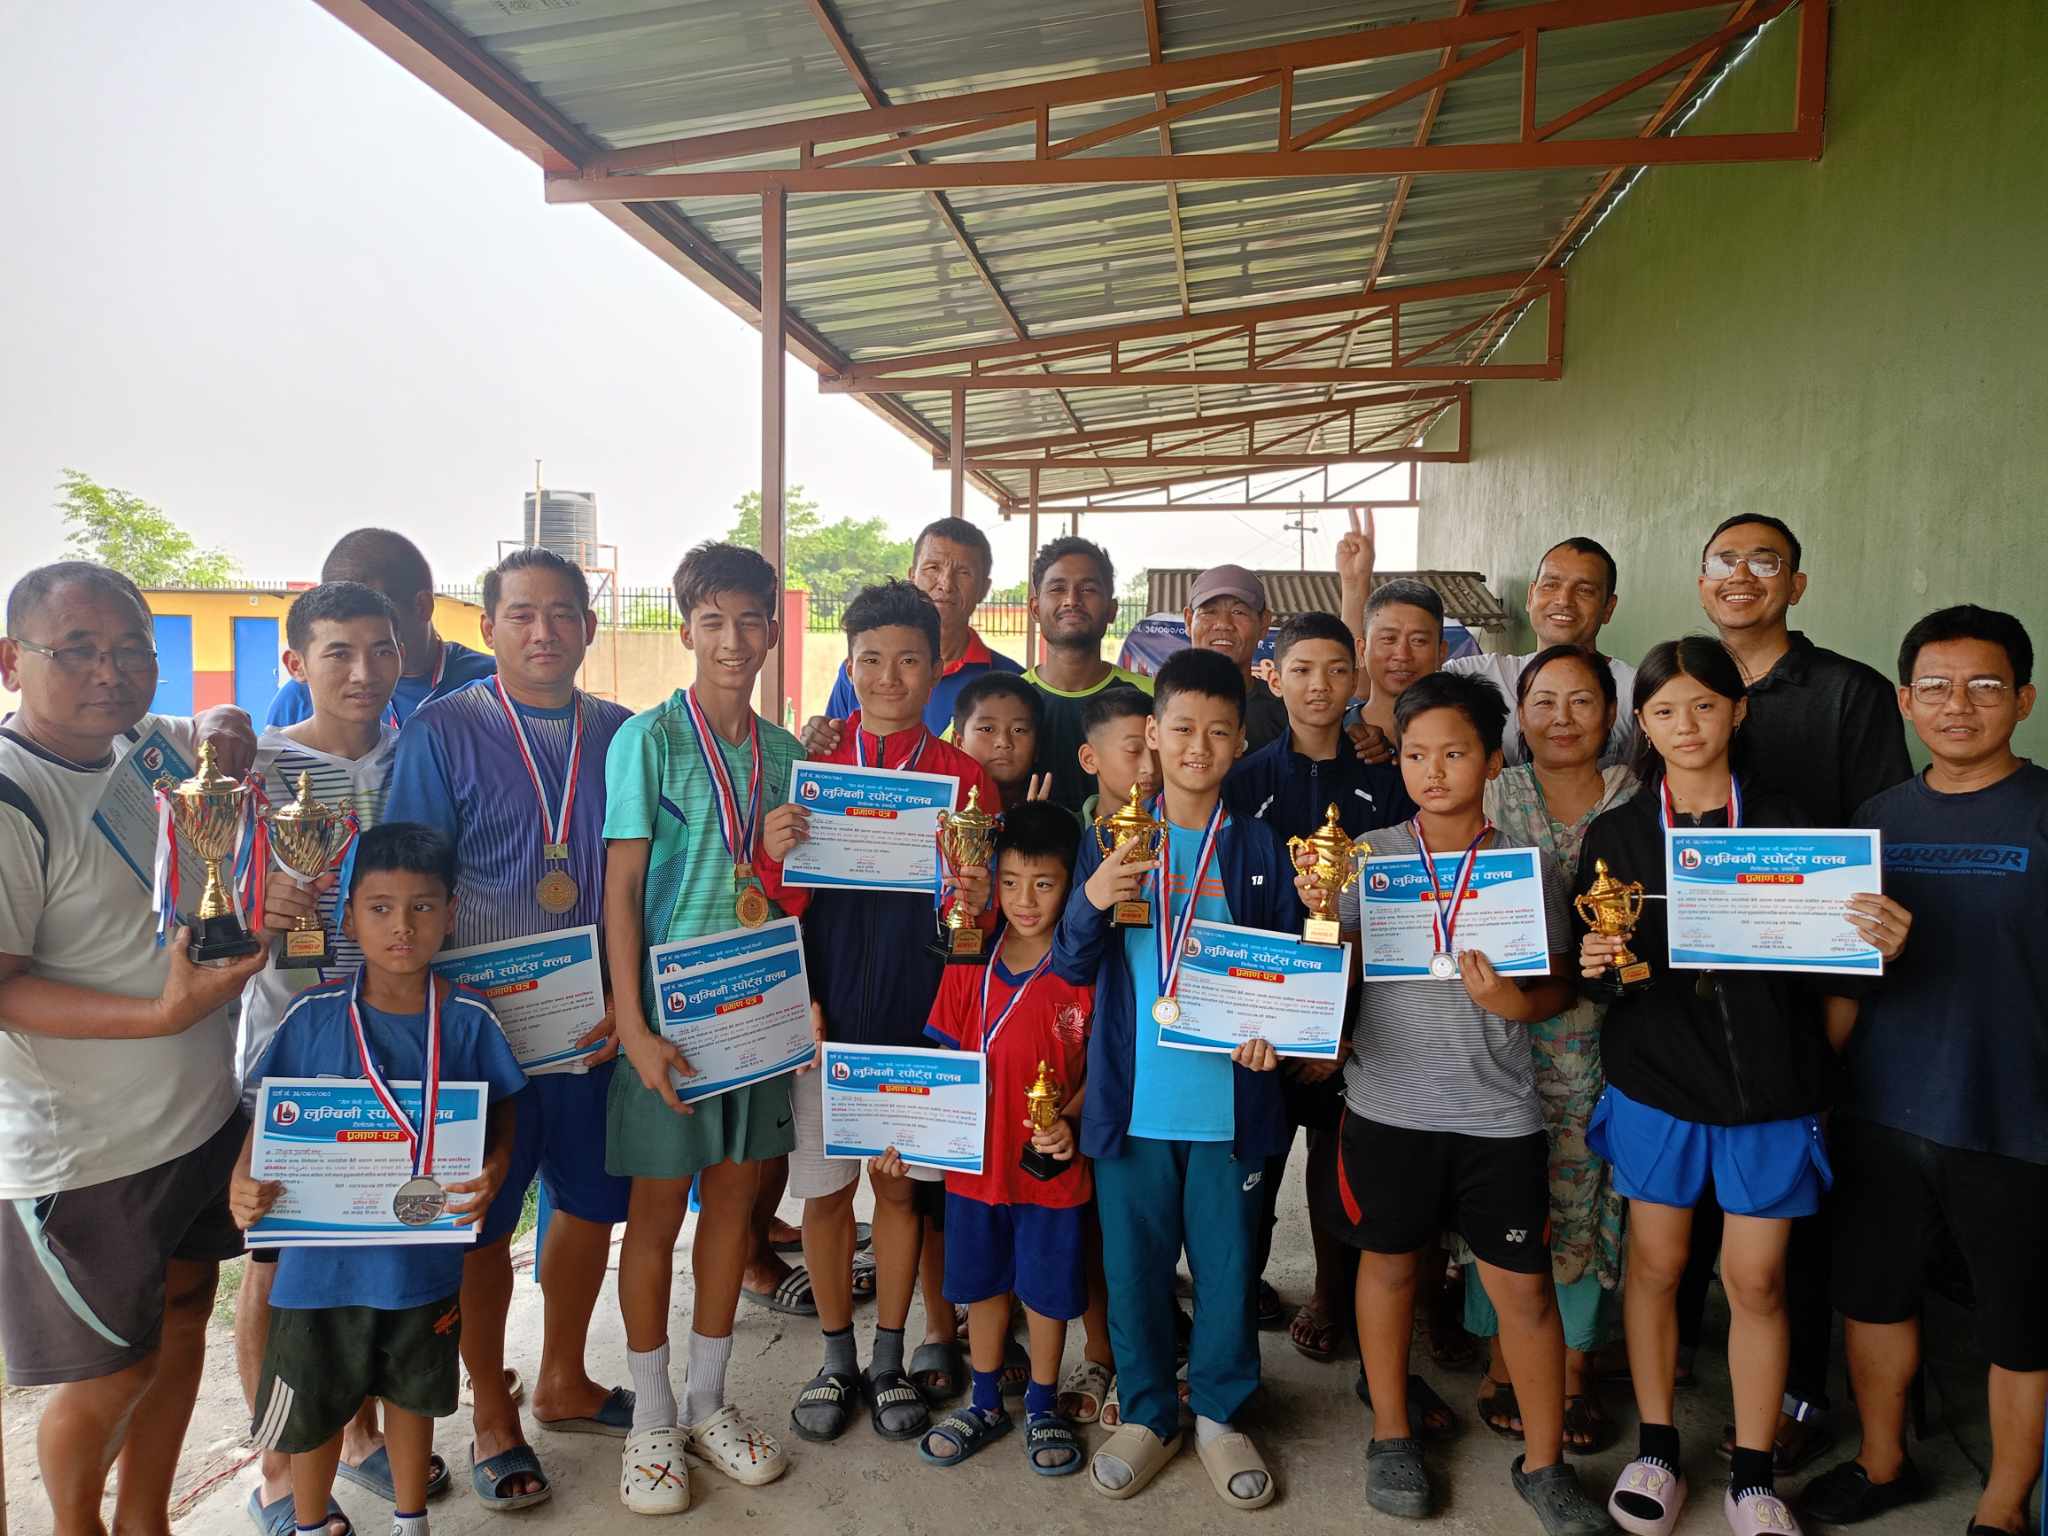 लुम्बिनी स्पोर्ट्स क्लबको छैठौ साधारणसभा तथा अन्तर क्लब ब्याडमिन्टन प्रतियोगिता सम्पन्न